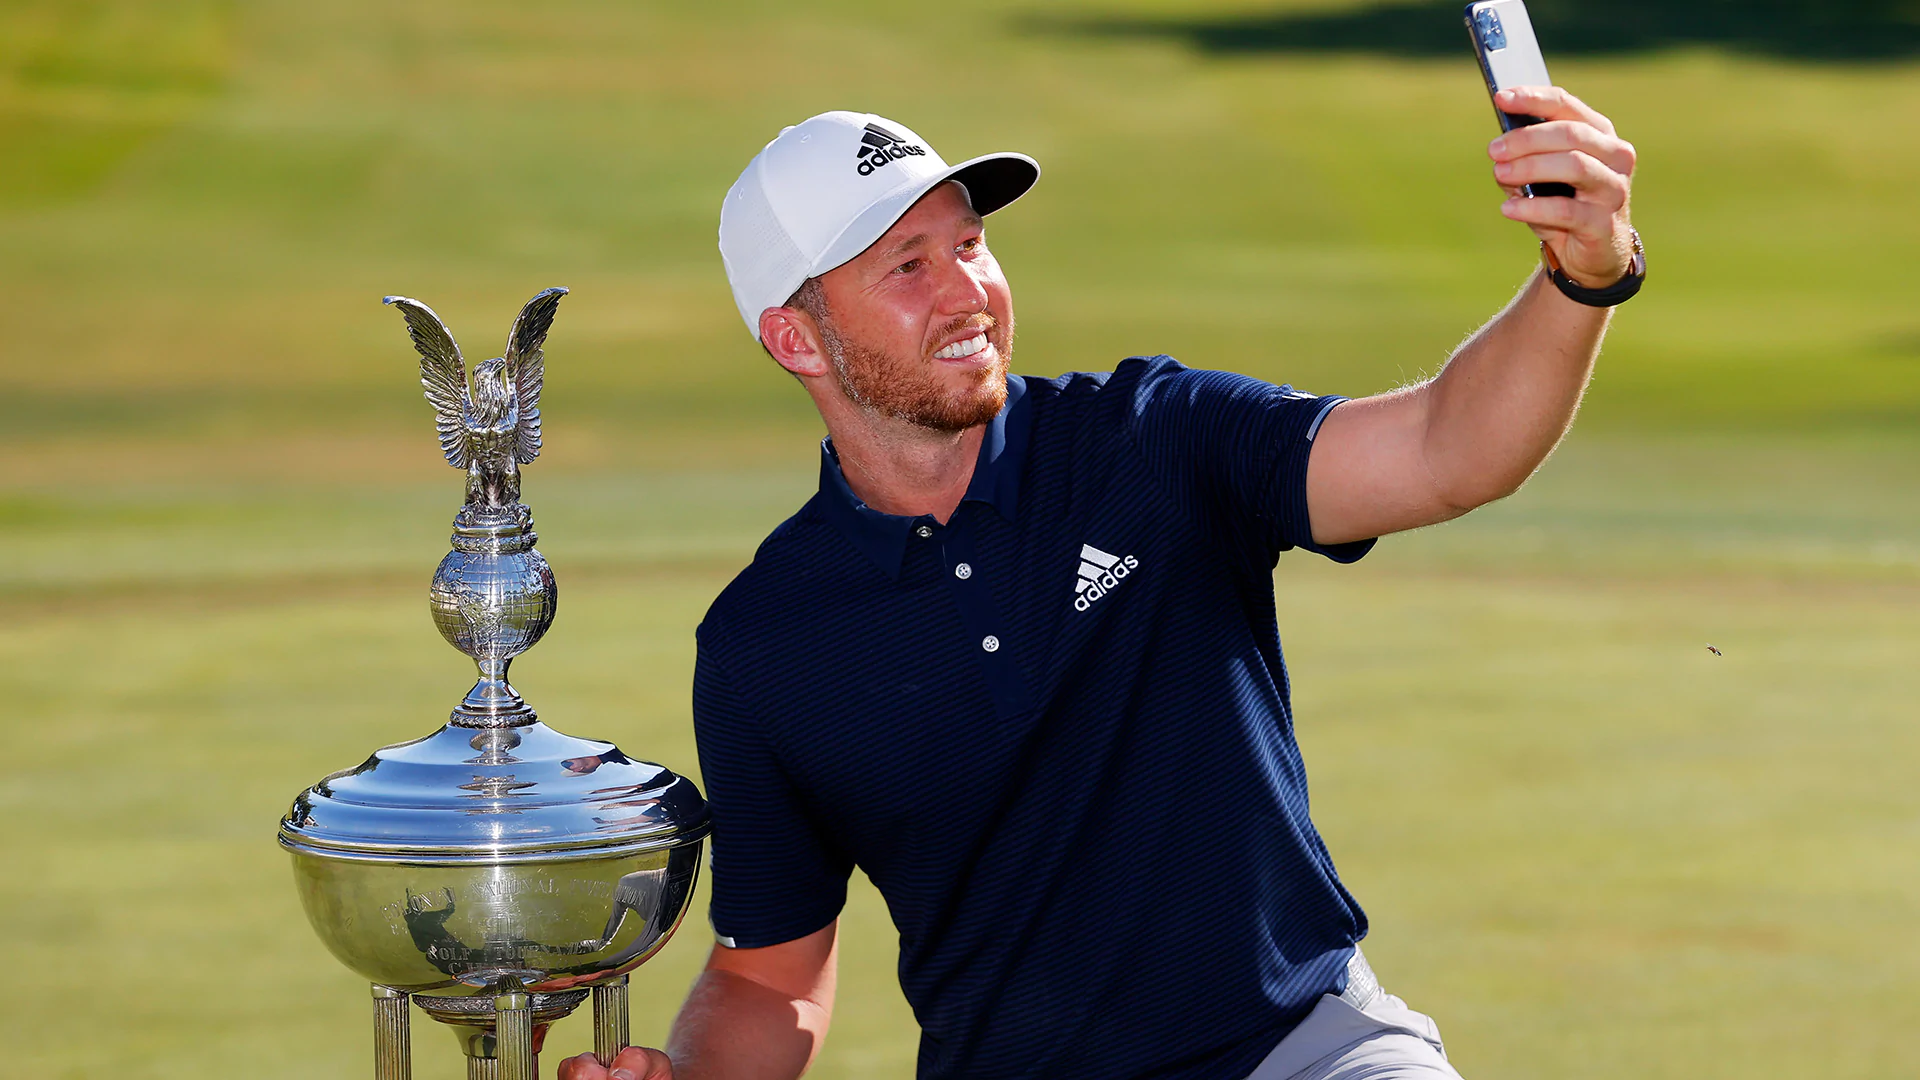 Wrist injury taught Daniel Berger not to take PGA Tour success for granted